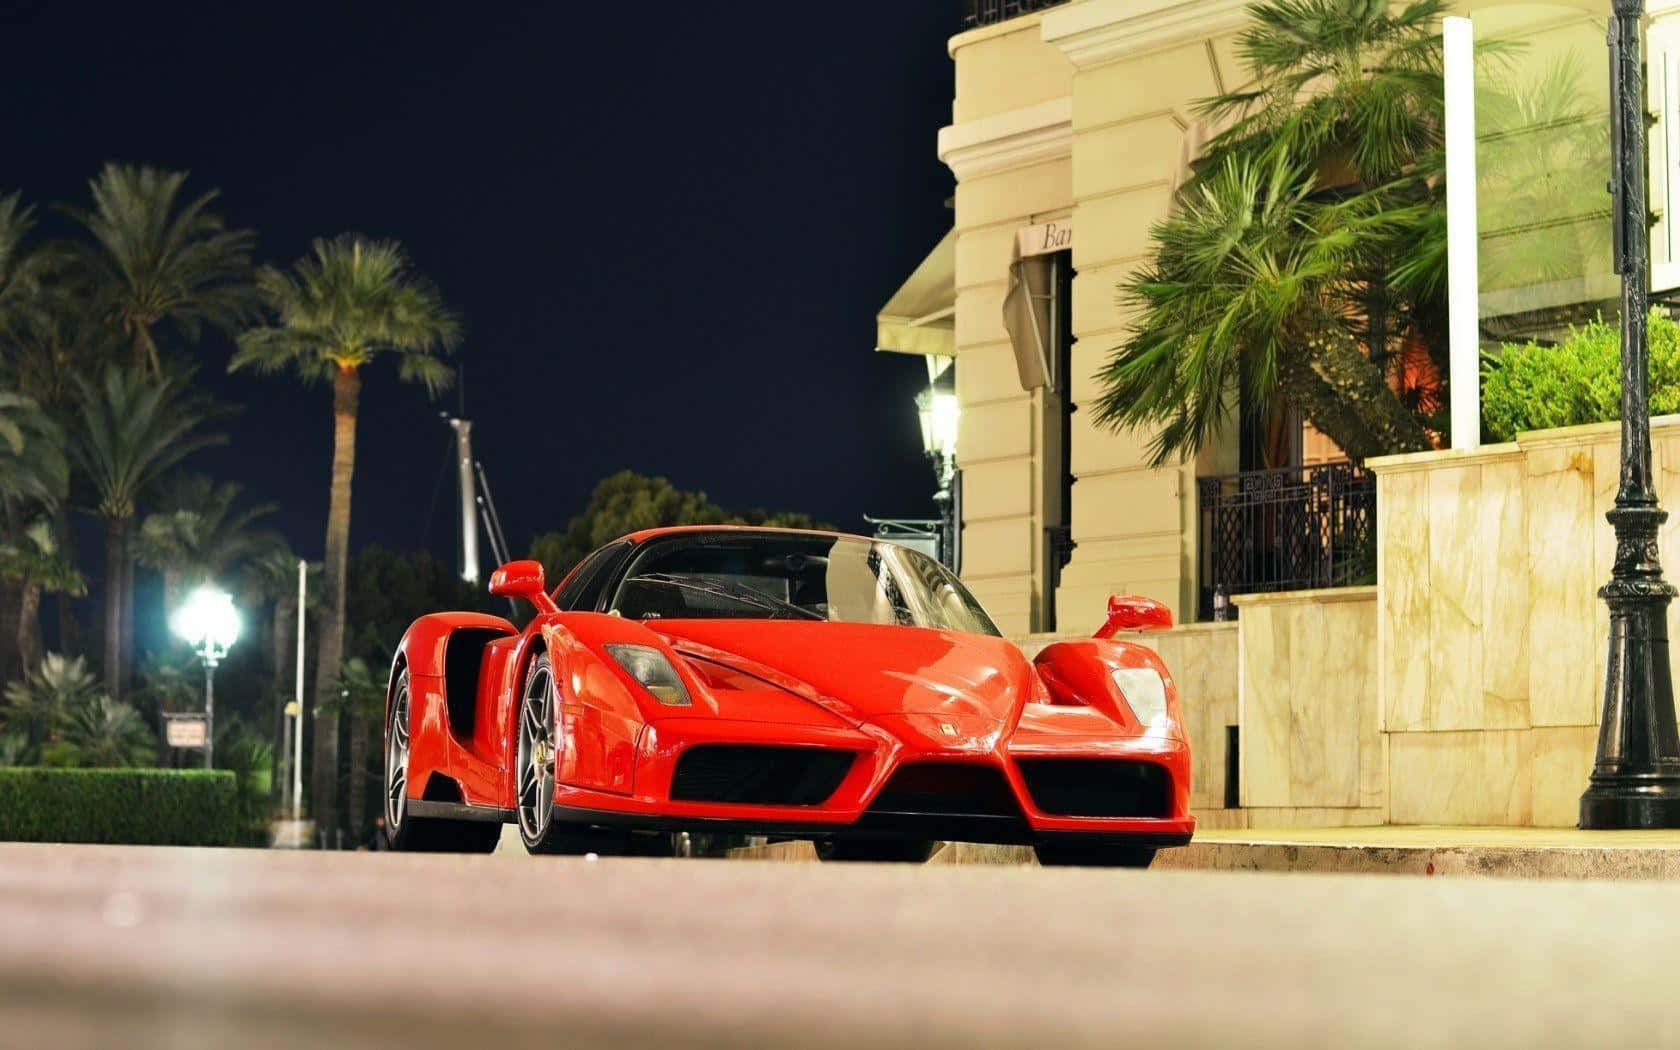 Stunning Ferrari Enzo in Motion Wallpaper